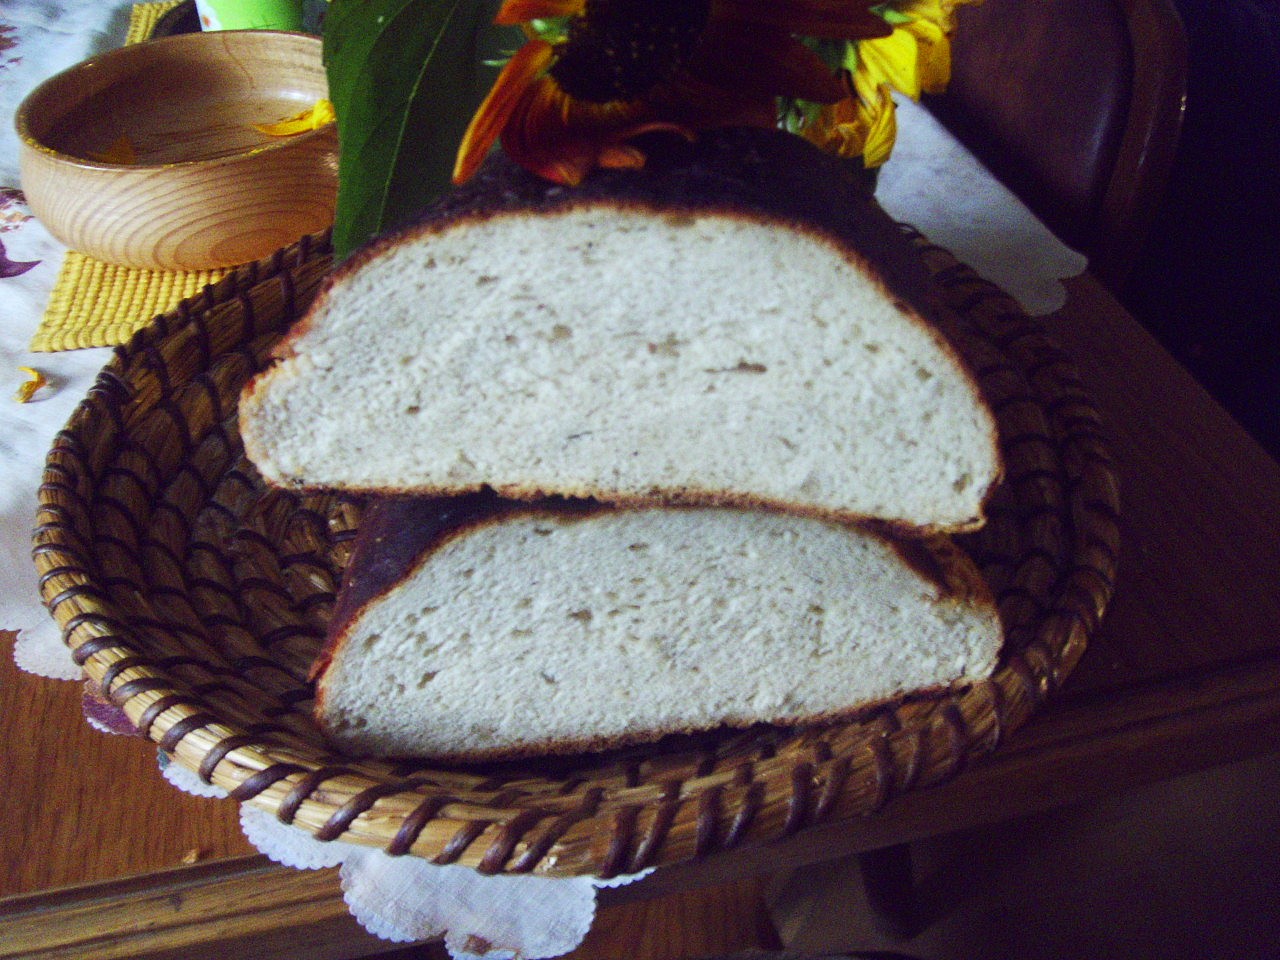 Domácí chleba s vůní saturejky